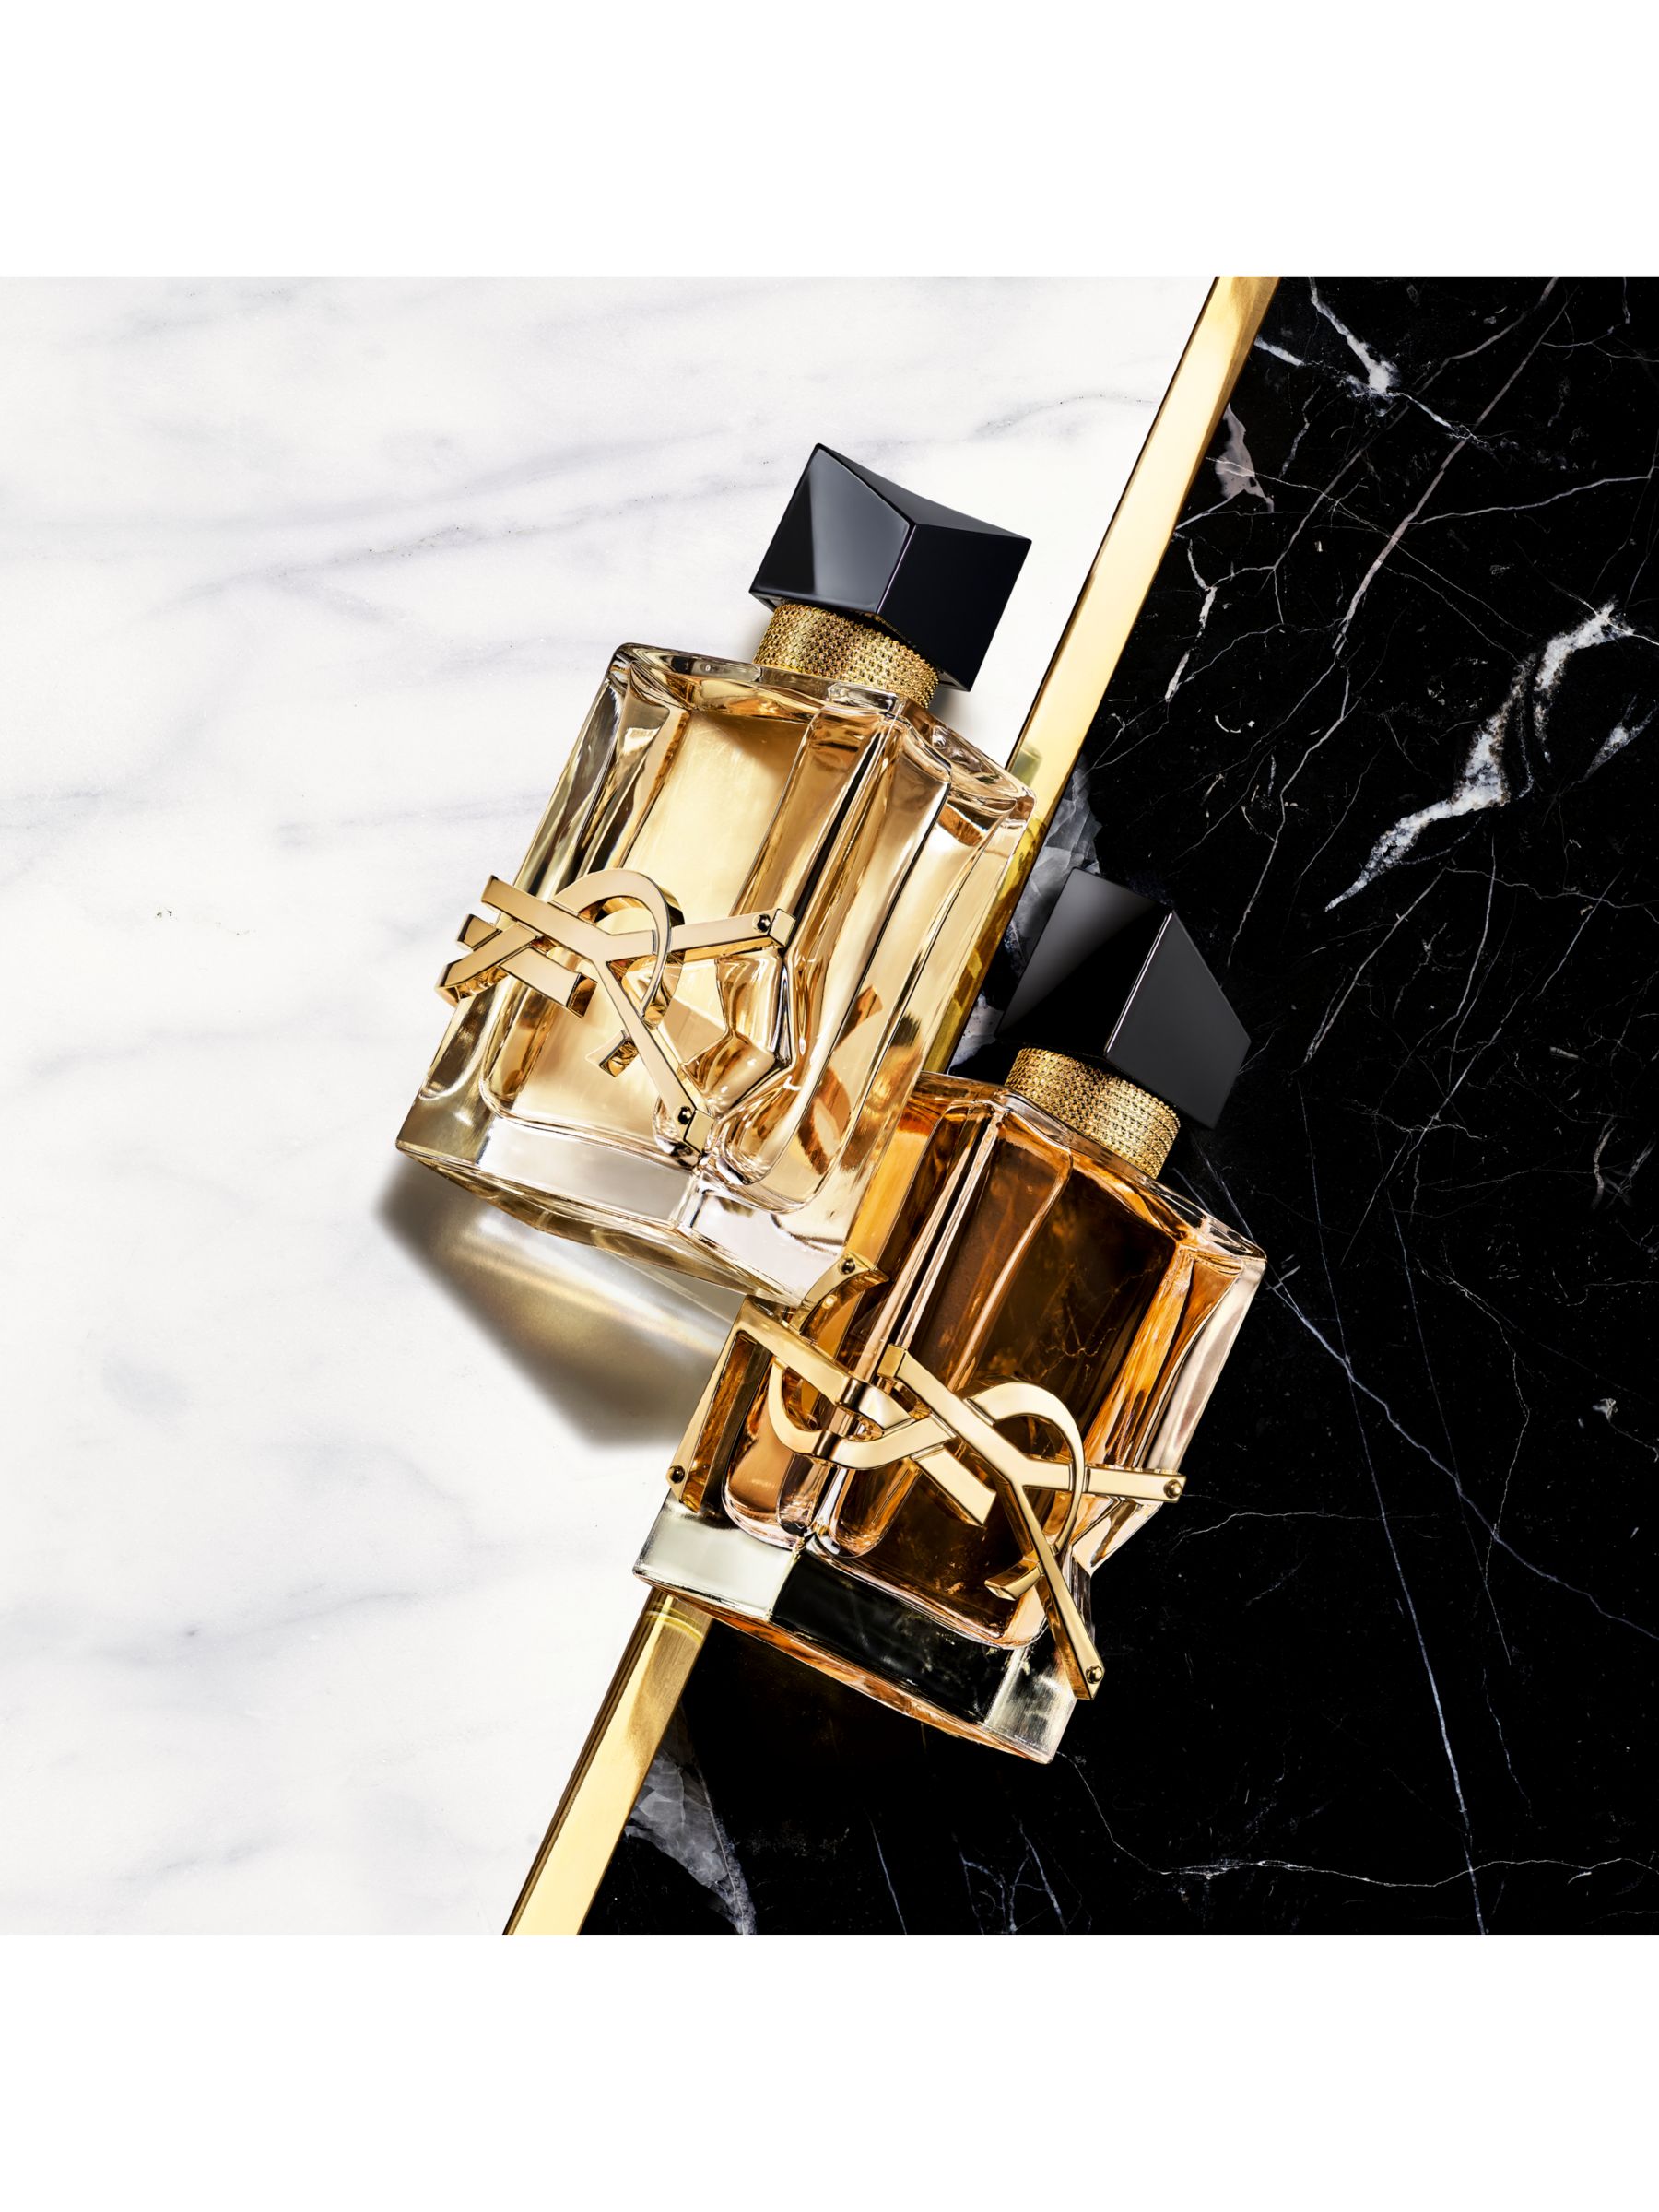 Yves Saint Laurent Libre Intense Eau De Parfum, 30ml at John Lewis ...